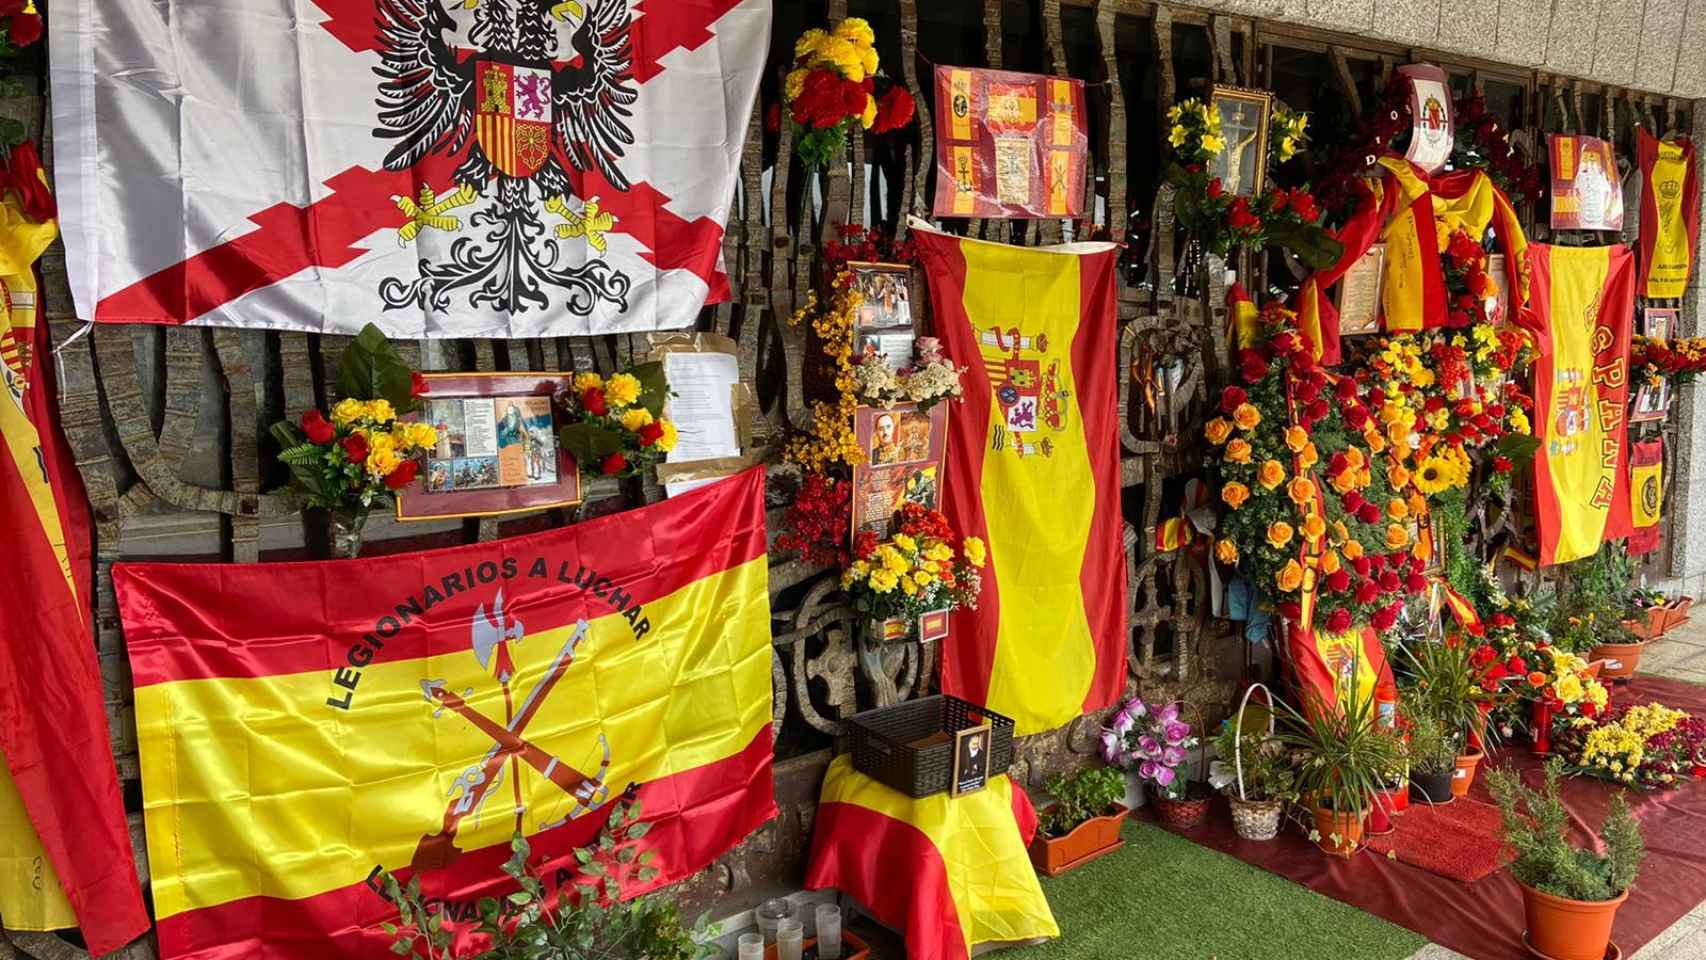 La tumba de Franco está llena de banderas